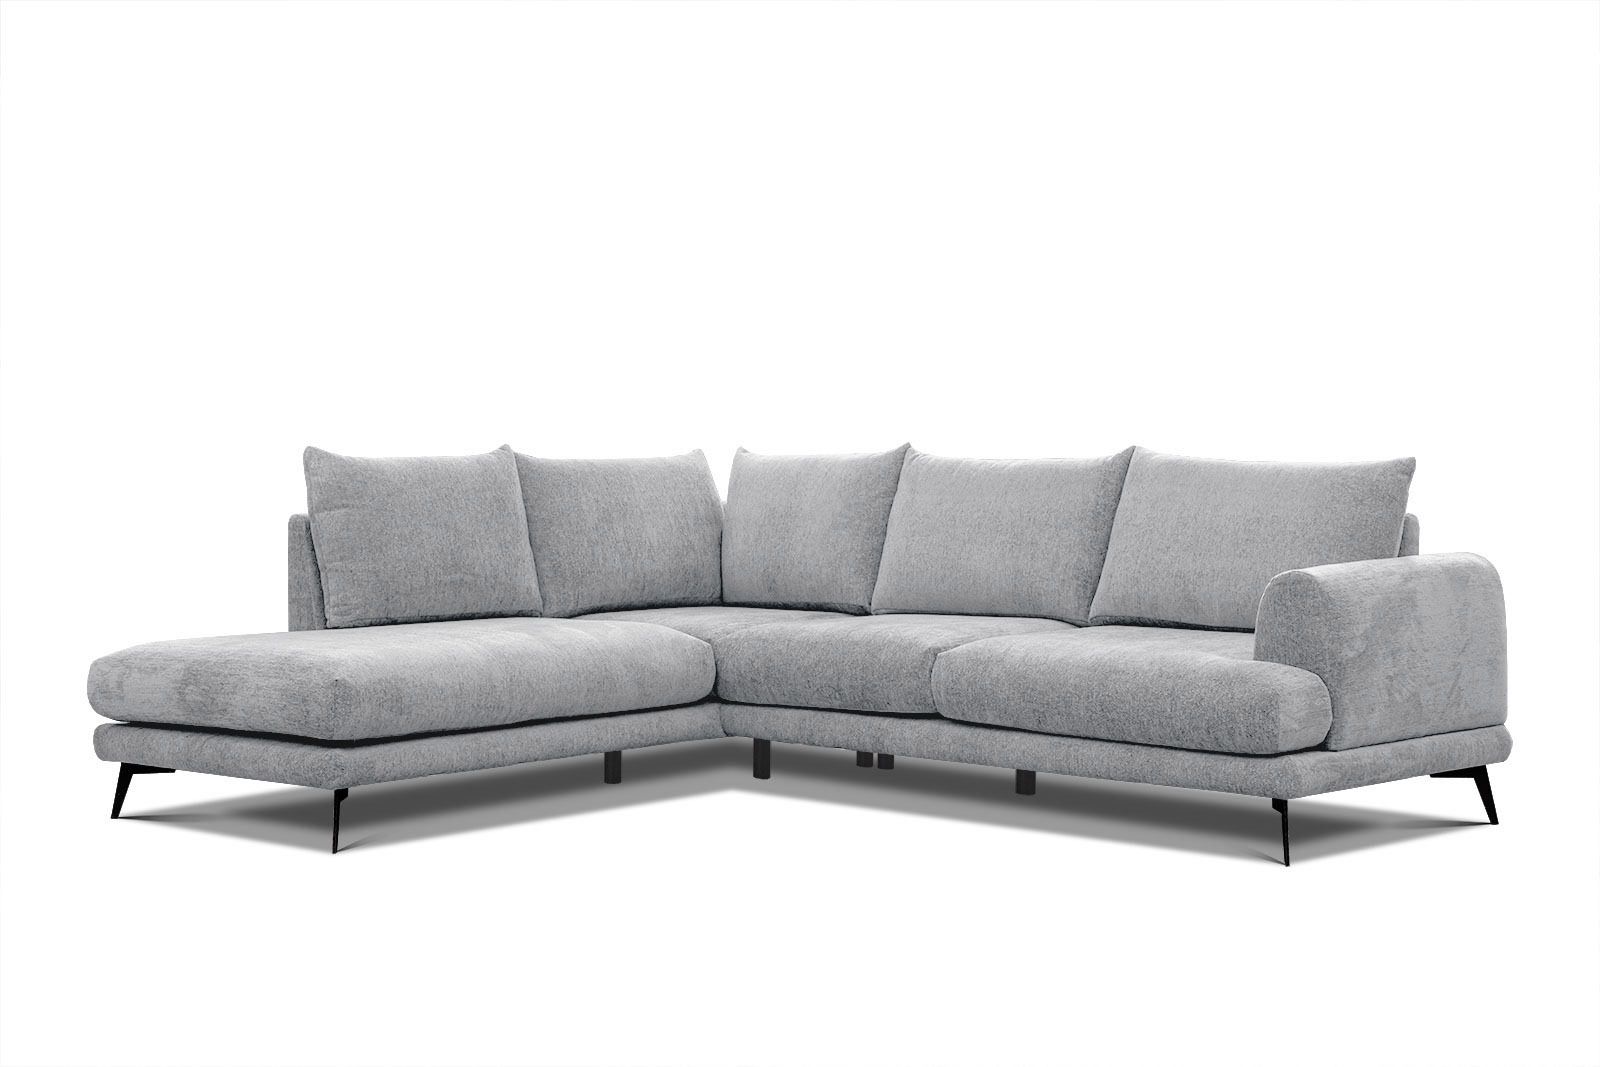 Canapé d’angle gauche 5 places tissu gris clair